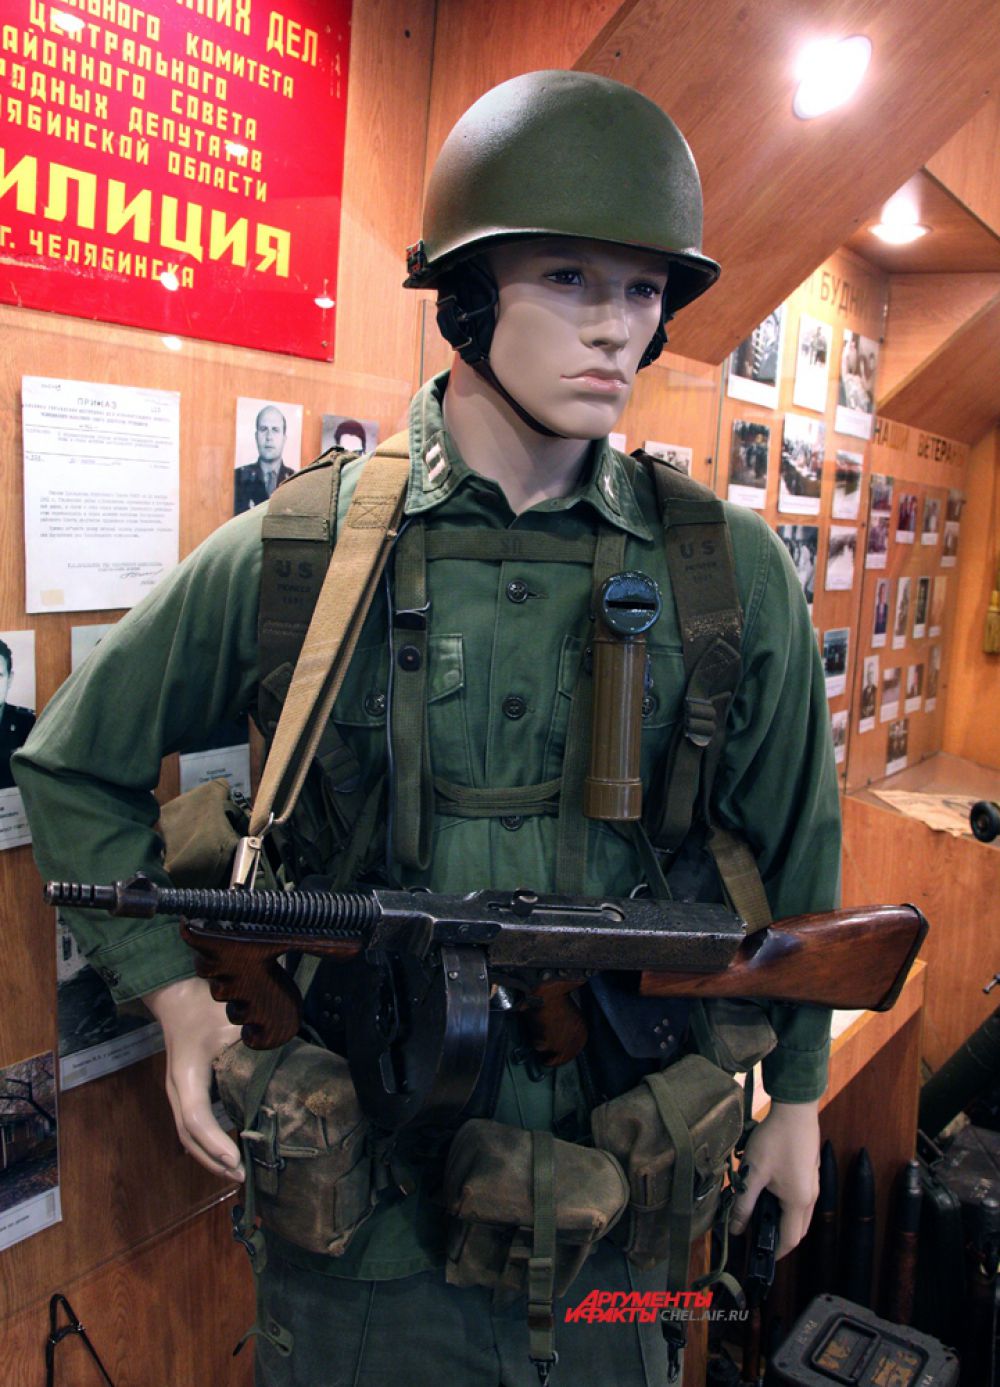 Американский солдат с автоматом "Томпсон" времён войны